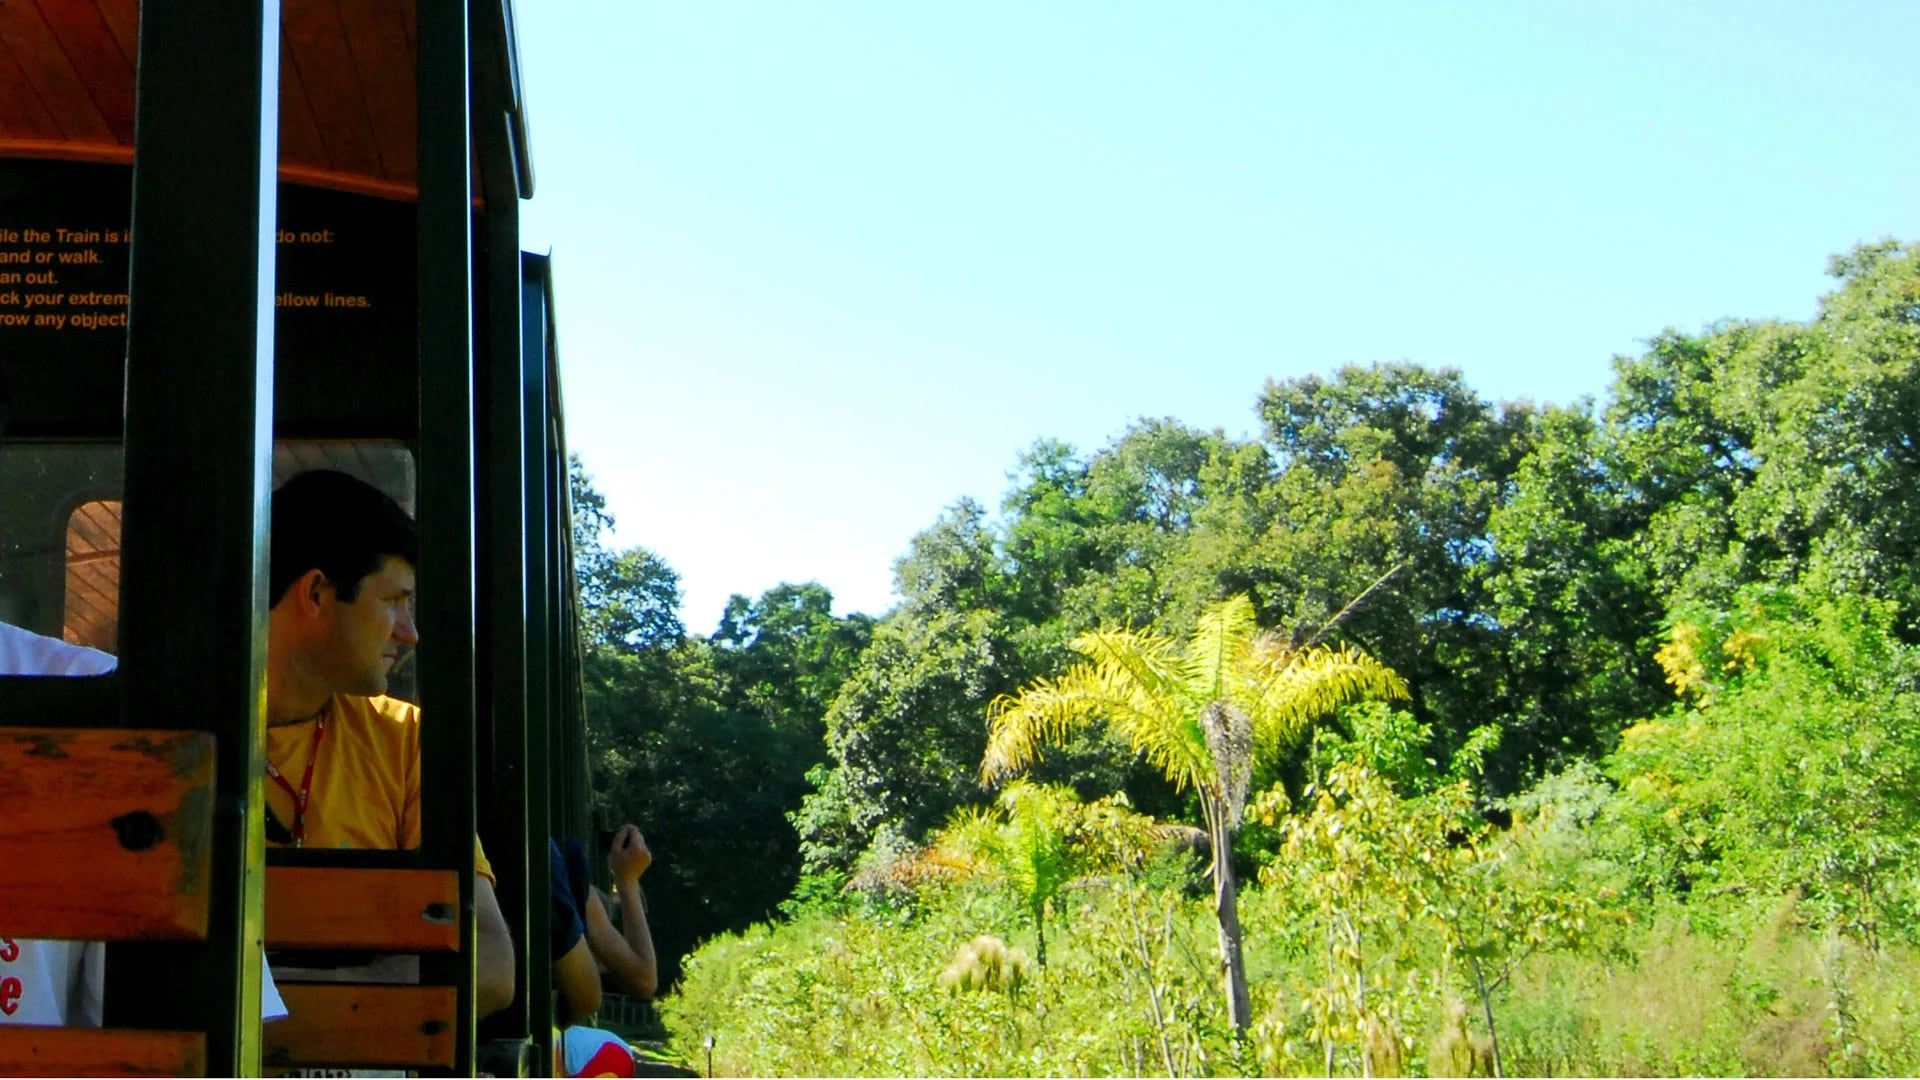 Tren ecológico de la selva. El Parque Nacional Iguazú es Patrimonio Mundial y las Cataratas, una de las nuevas maravillas naturales del mundo. Hay una forma de conocerlo desde un punto de vista distinto y es en un tren ecológico. Recorre 7 kilómetros de selva y llega a la pasarela que conduce a los balcones hasta casi el borde del salto más imponente y alto: la Garganta del Diablo